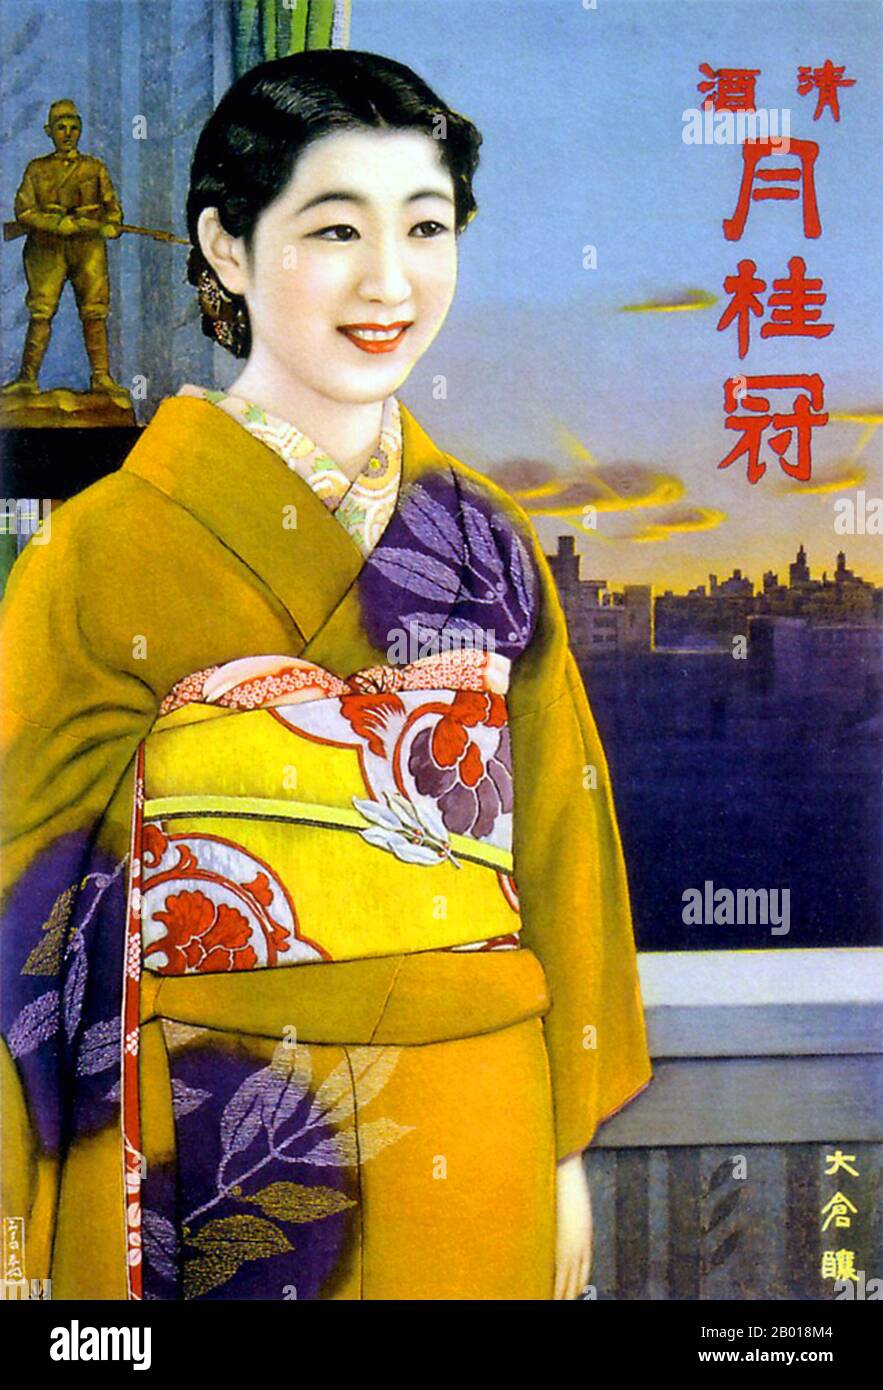 Giappone: Poster pubblicitario per il sake di Gekkeikan, c.. 1935-1938. Il crescente militarismo è evidente in questa pubblicità per il bene di Gekkeikan. Una donna giapponese in kimono tradizionale si trova di fronte al modello di un soldato con pistola. Il poster non mostra alcun motivo. Foto Stock